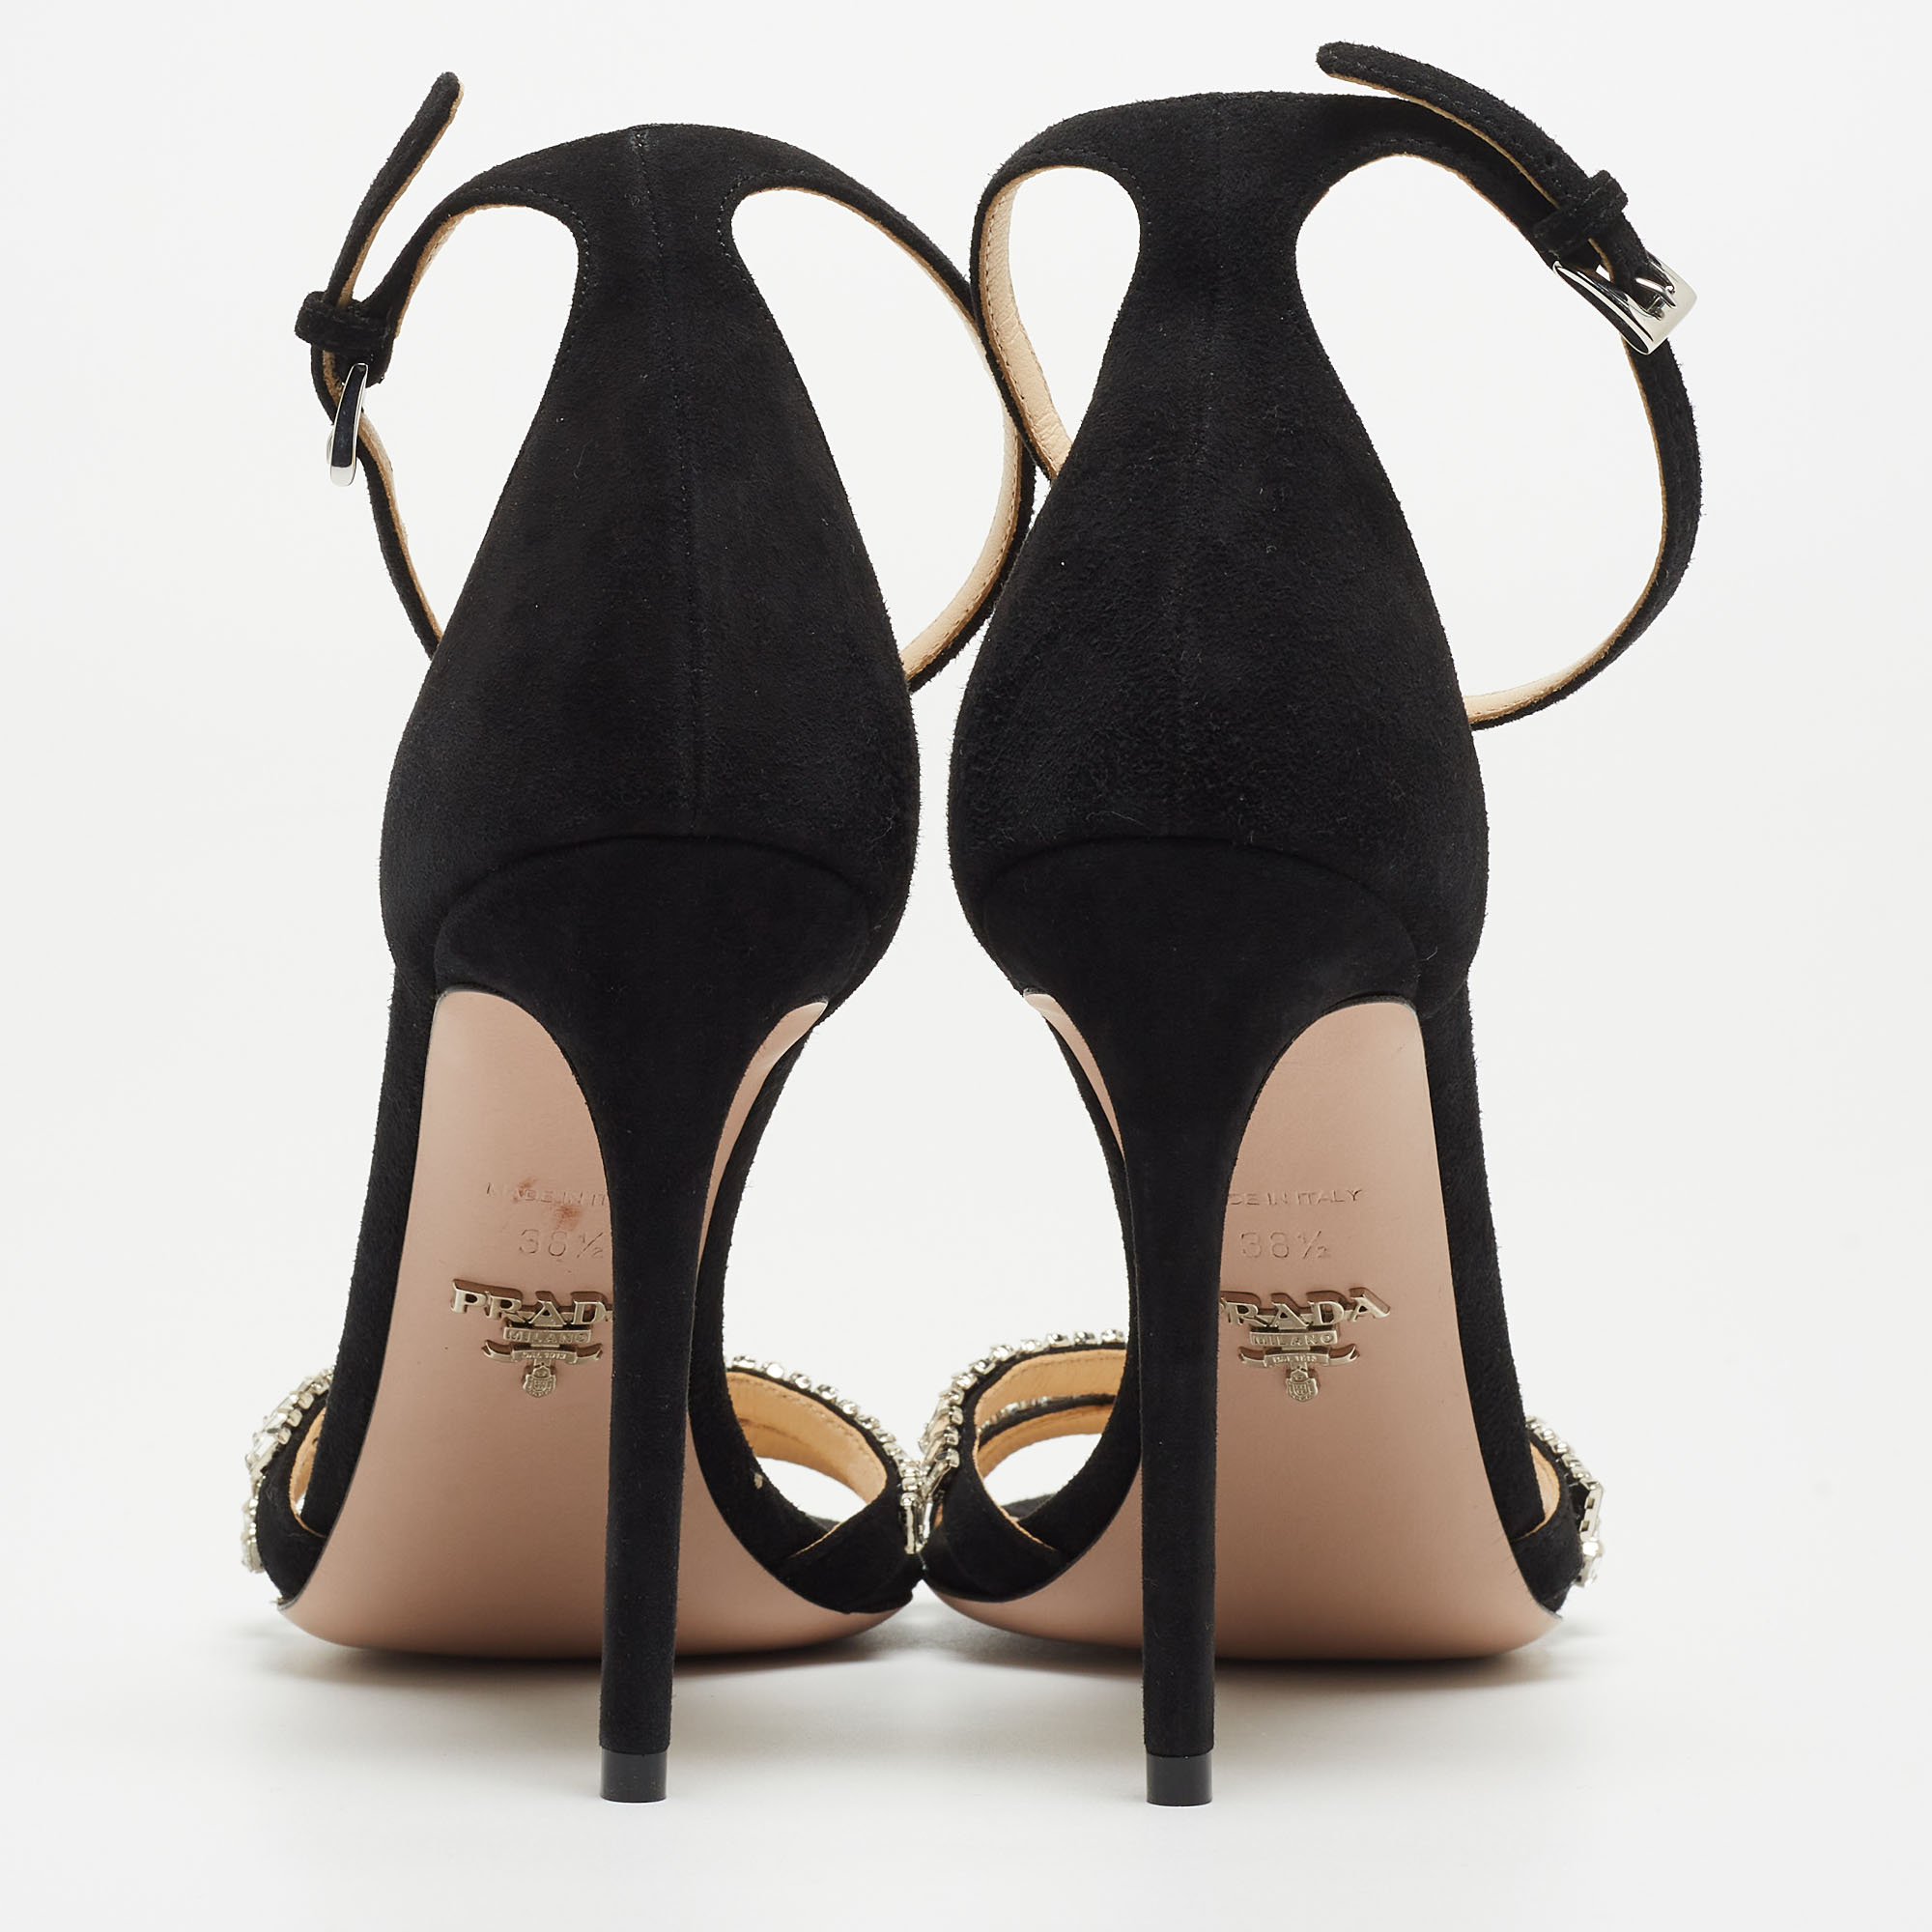 Prada Black Suede Crystals Embellished Ankle Strap Sandals Size 38.5